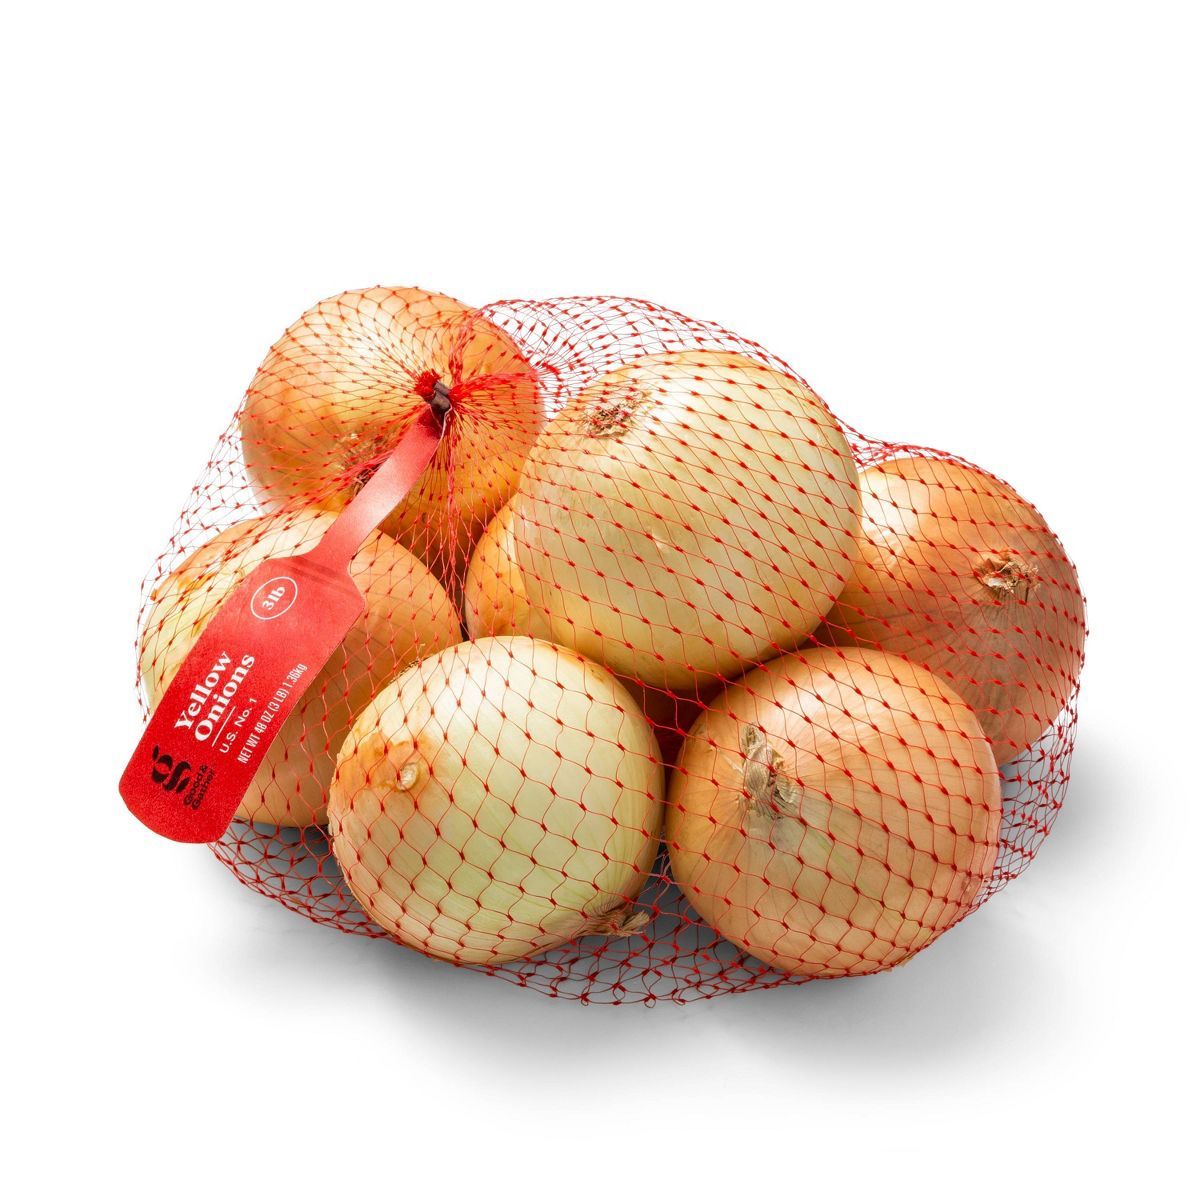 Yellow Onions - 3lb Bag - Good & Gather™ | Target